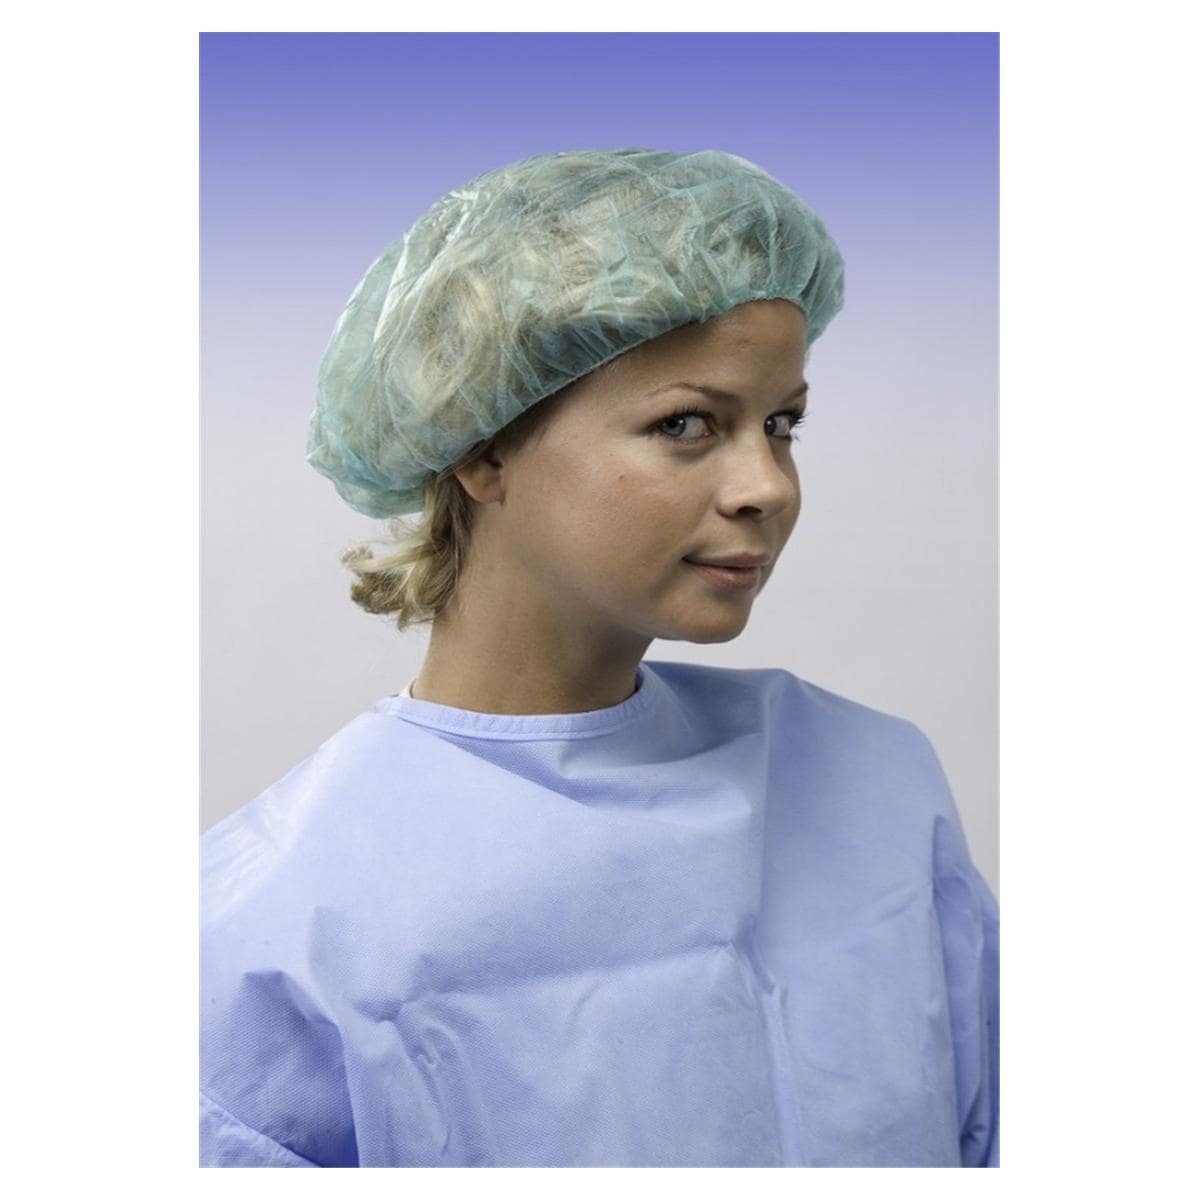 OK - Chirurgische operatiemuts - Model rond met elastiek, groen 30.M0001 - 500 stuks